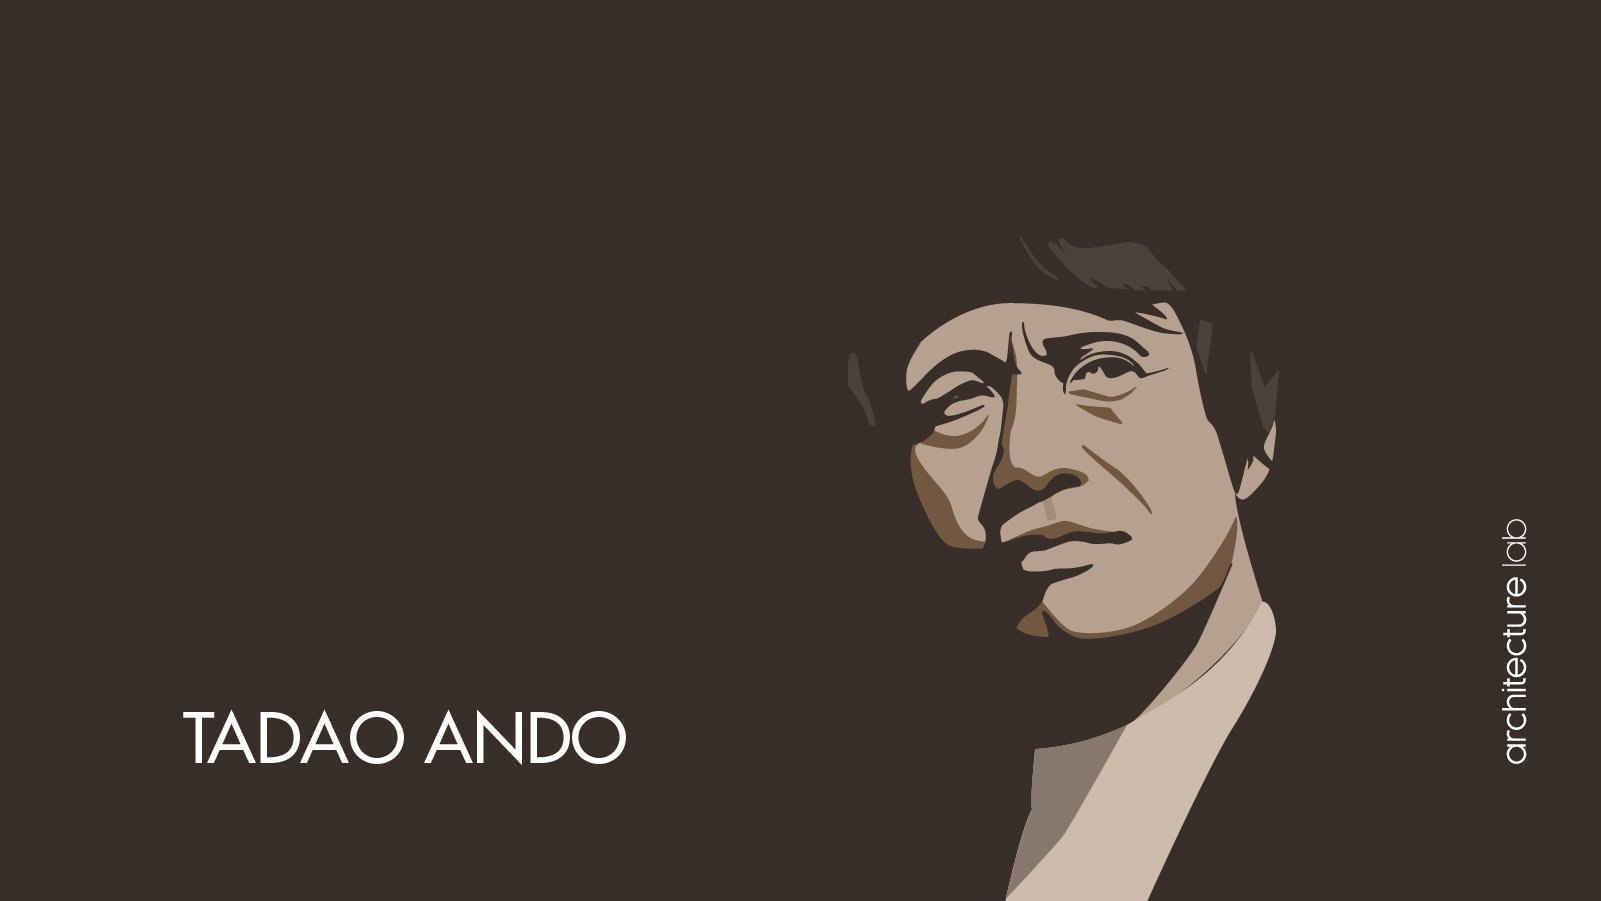 Tadao ando: biography, works, awards